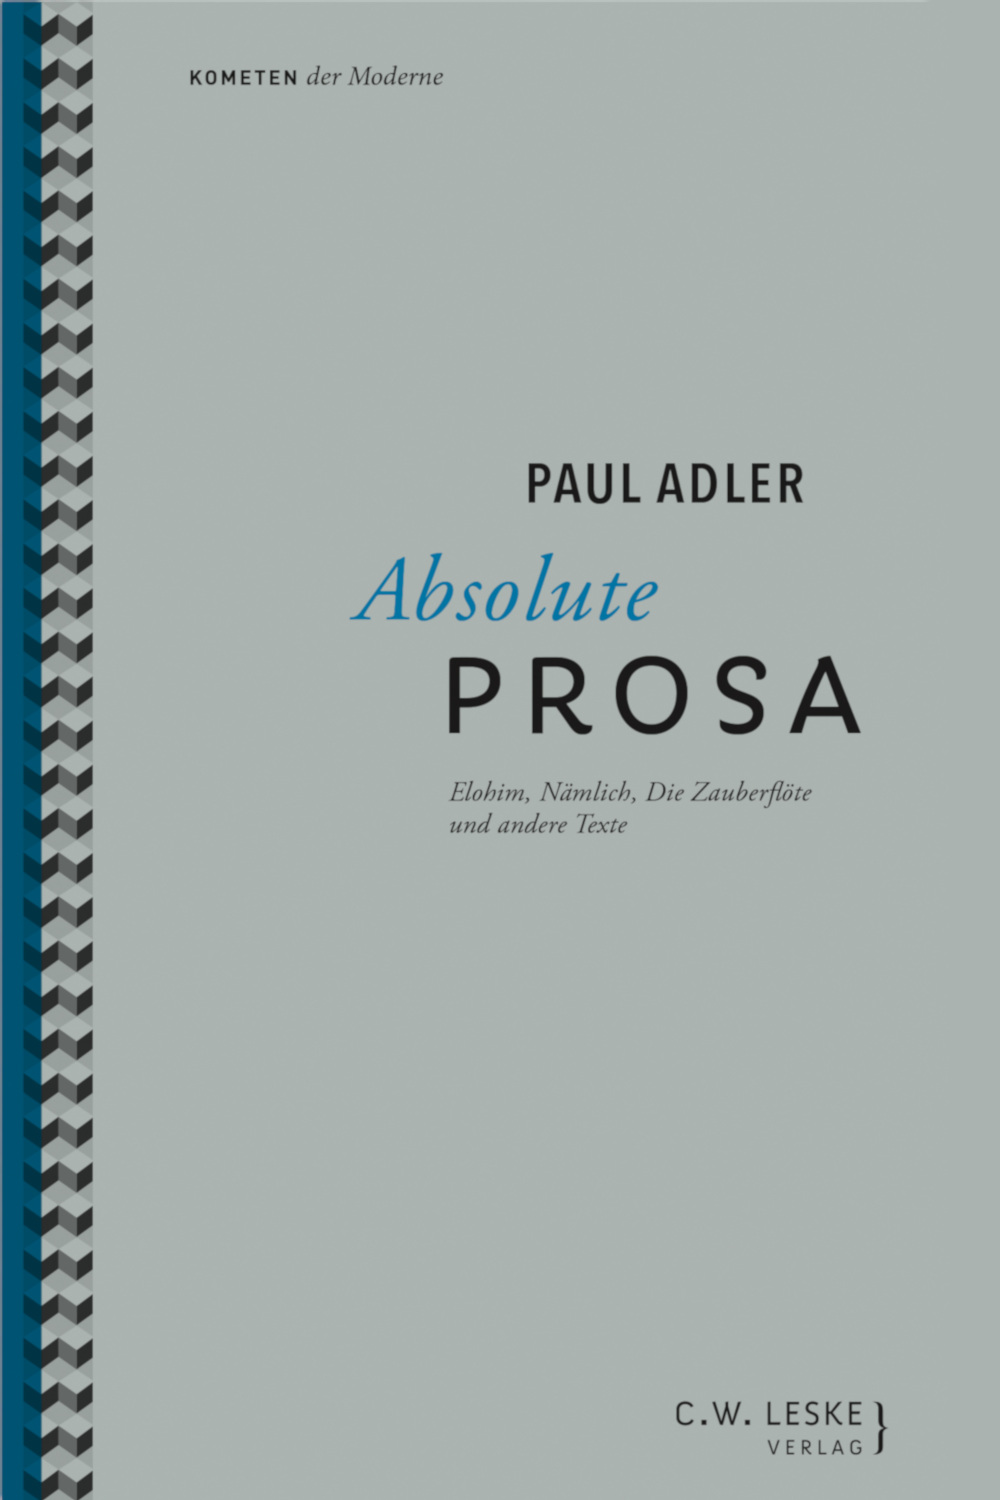 Paul Adler: Absolute Prosa